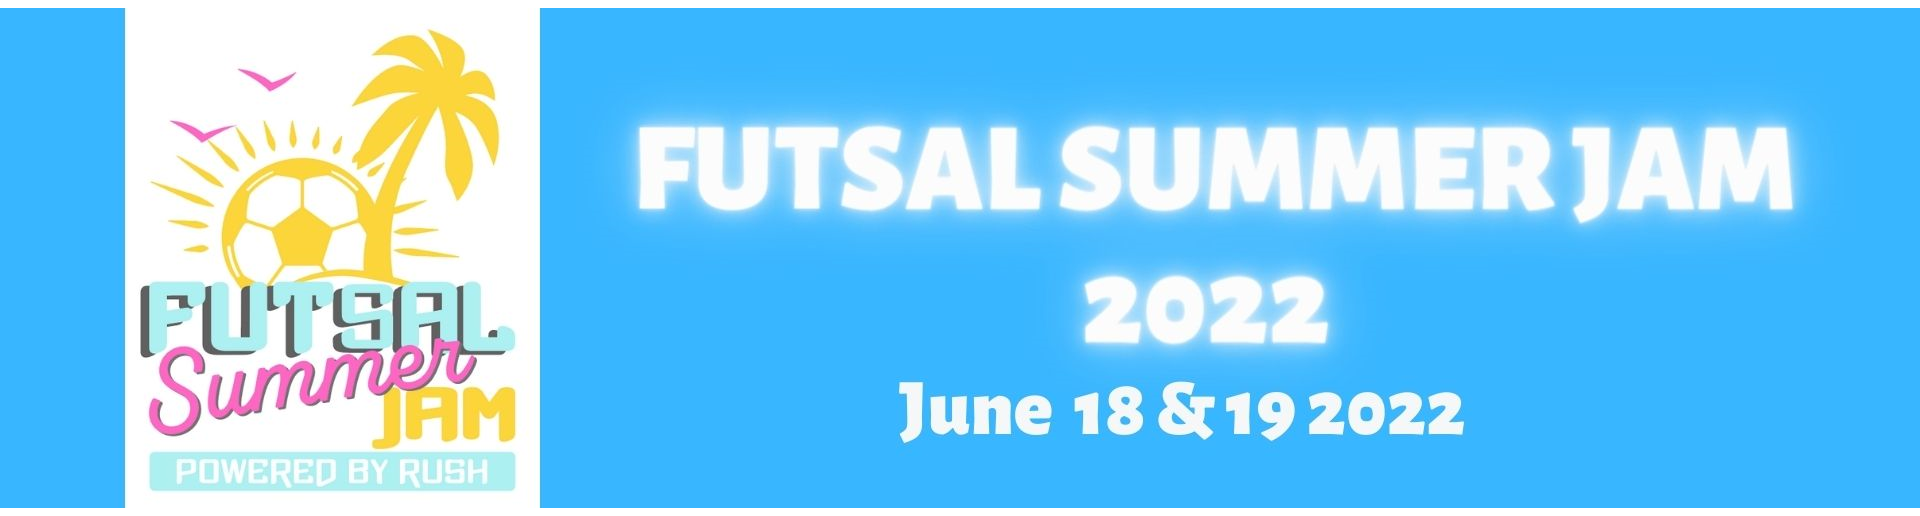 Futsal Summer Jam 2022